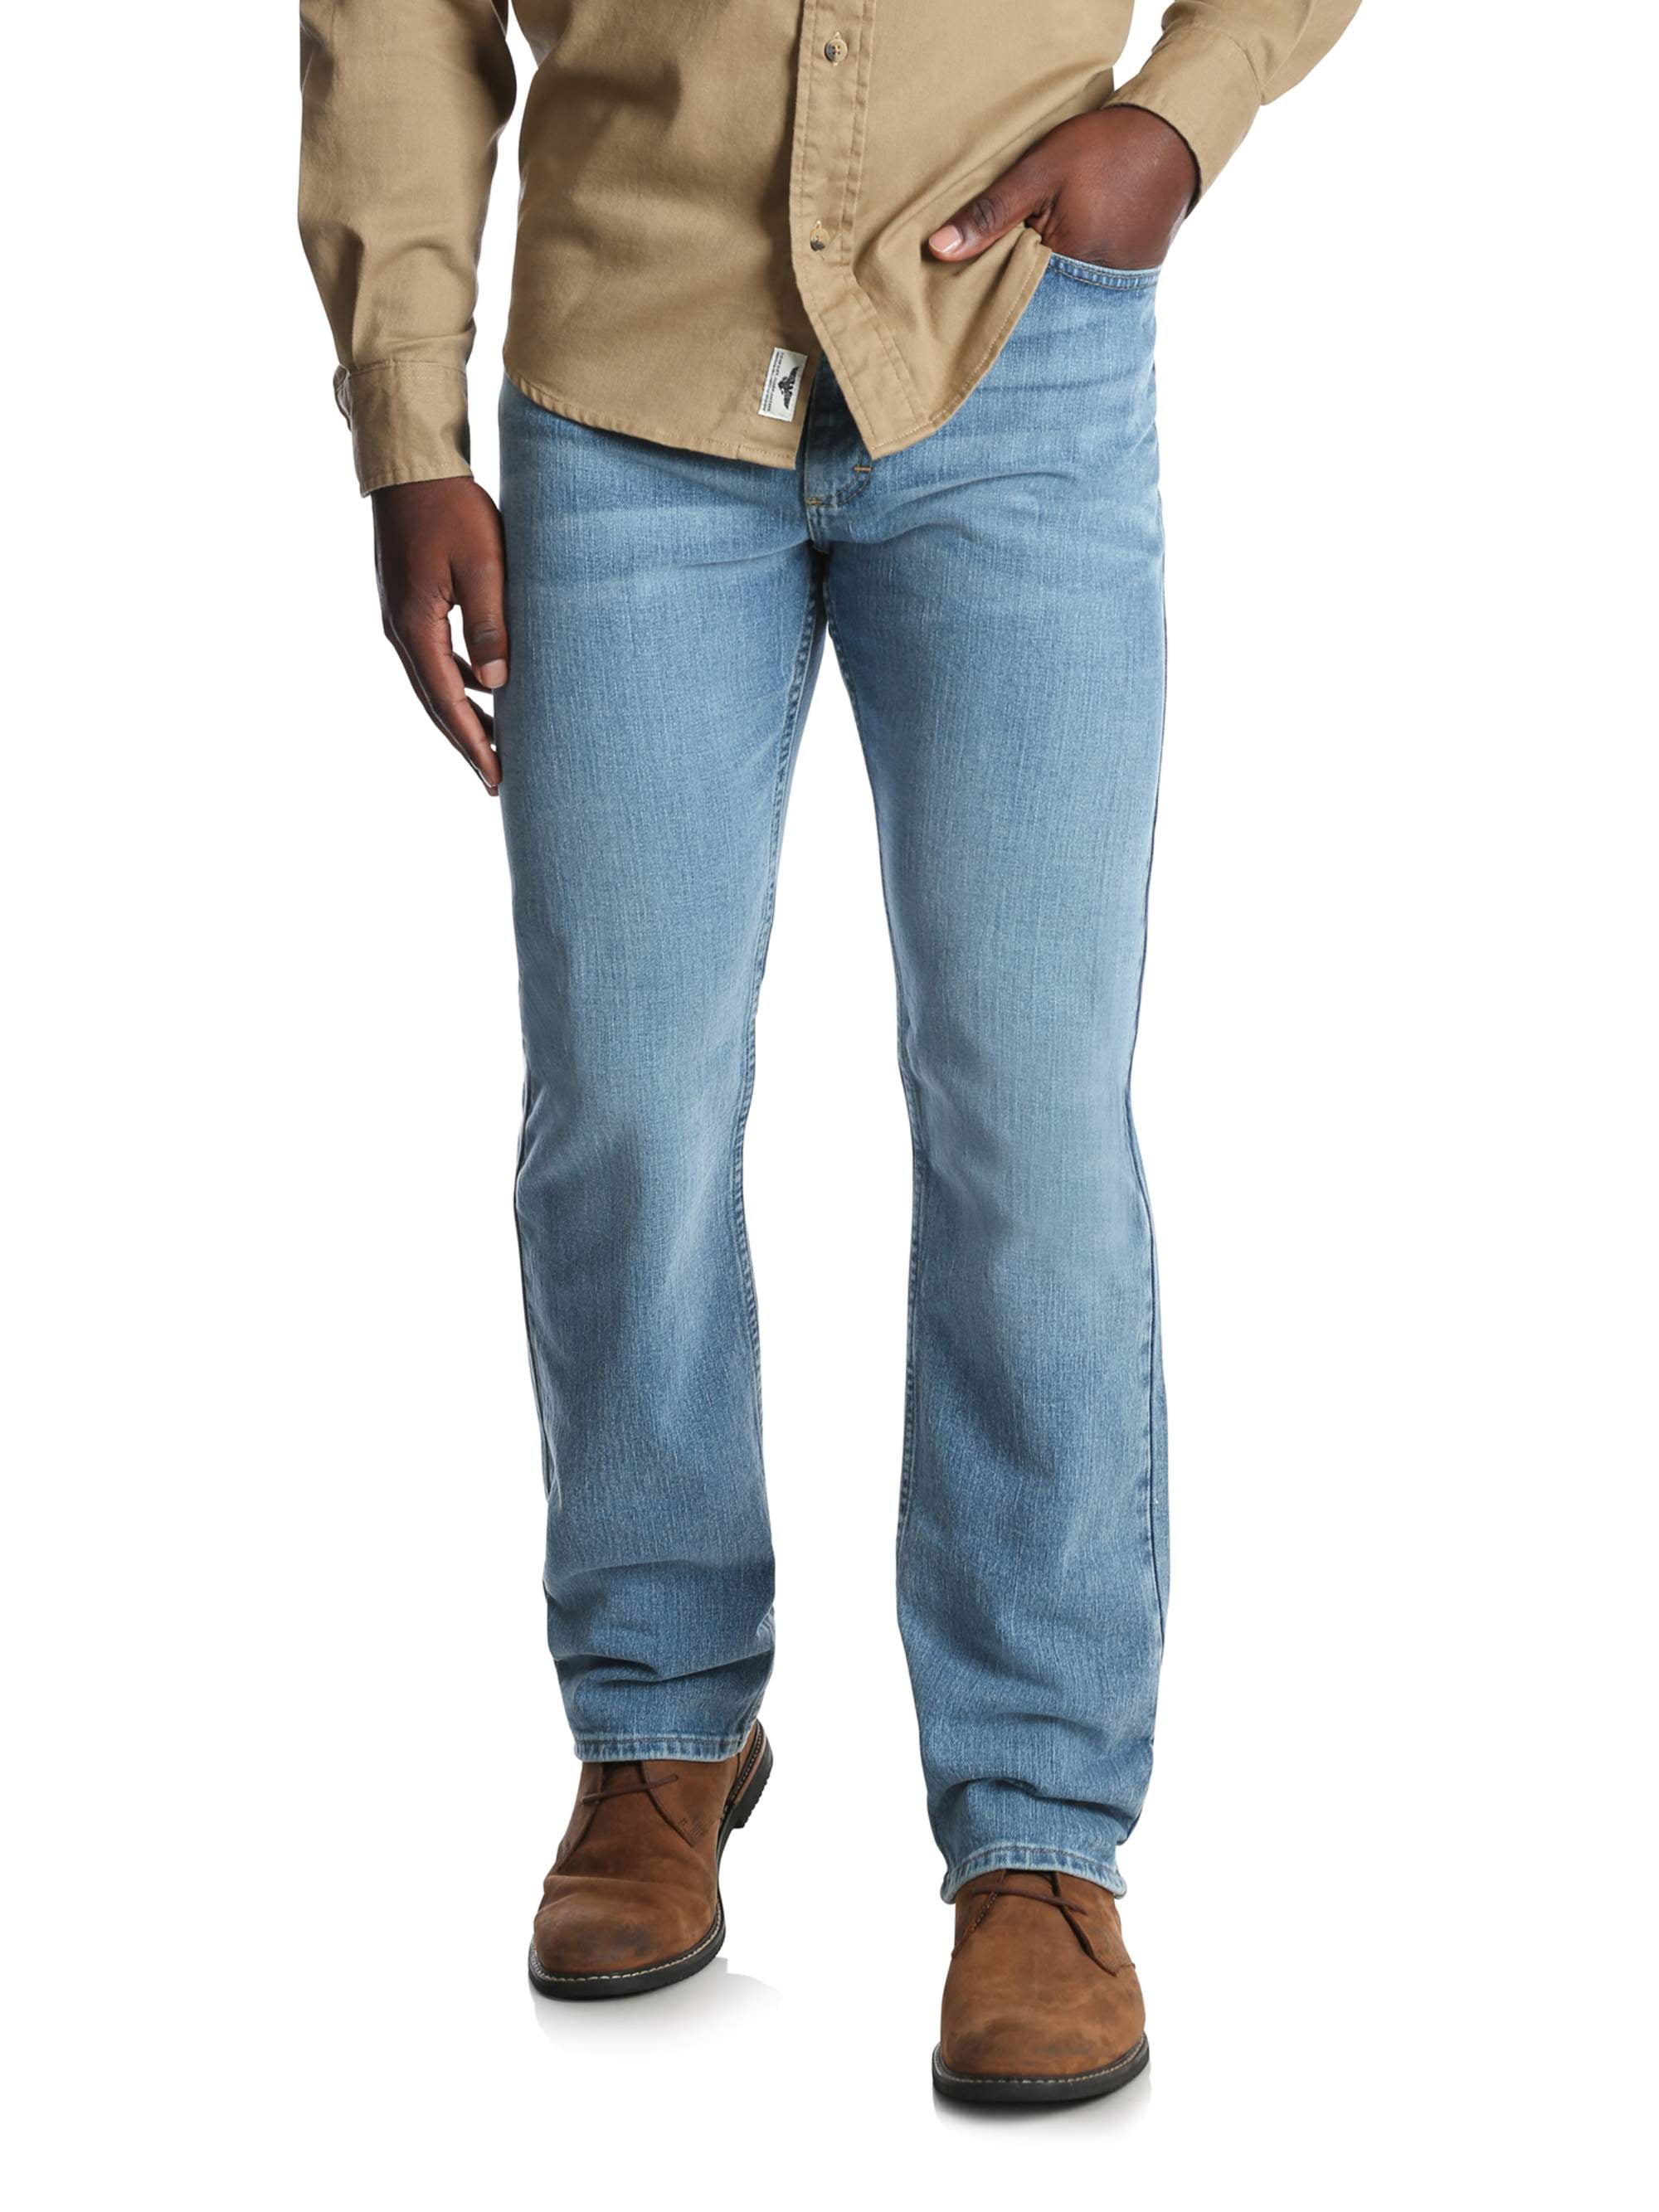 NEW Request mens jeans Regular SLIM  fit solid BLACK MSRP $69 